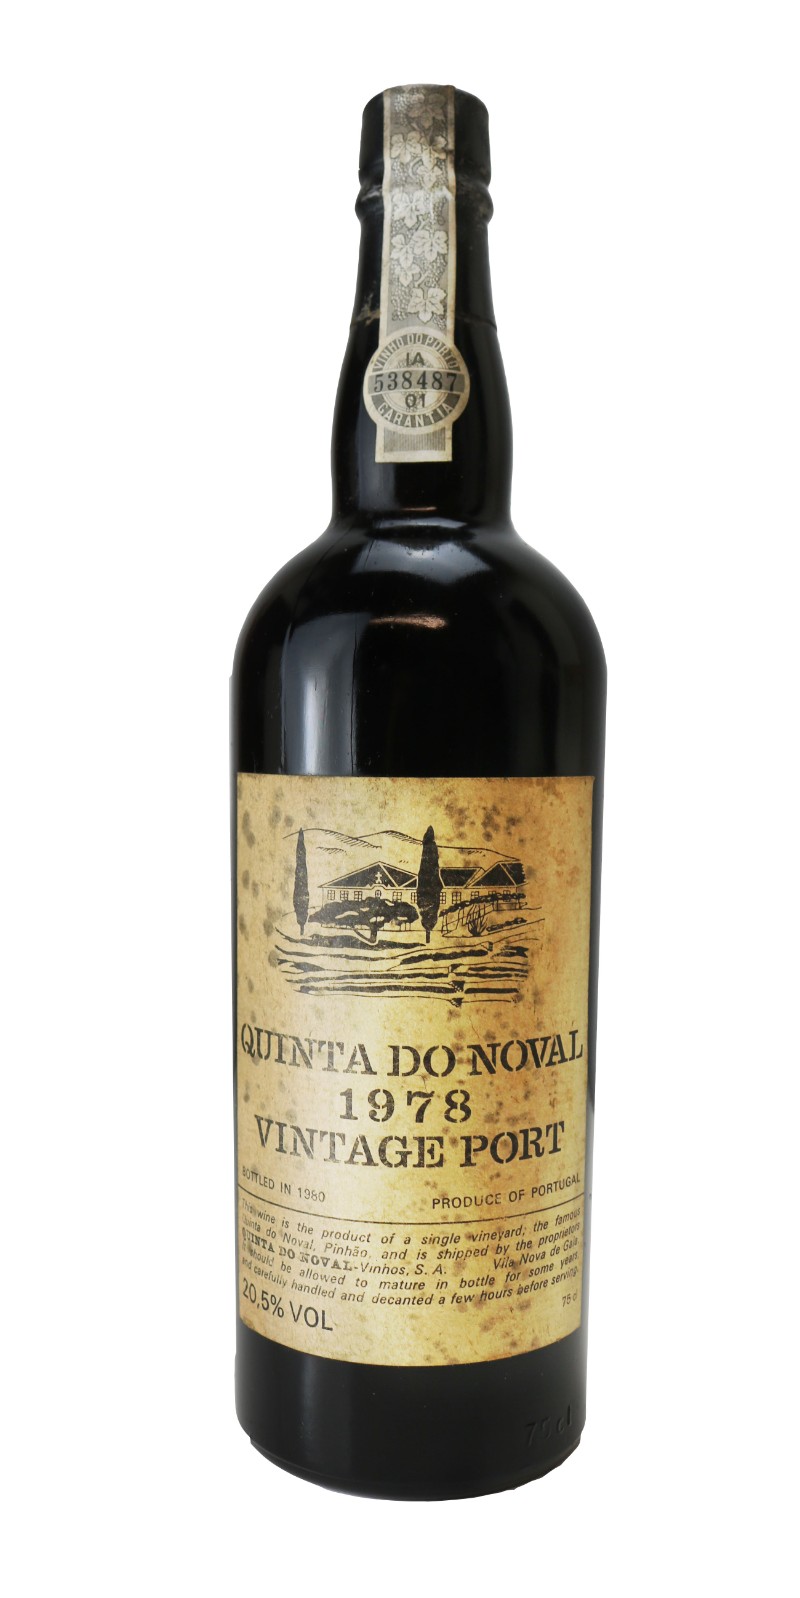 Quinta do Noval Port, Port, 1978 | Vintage Wine and Port